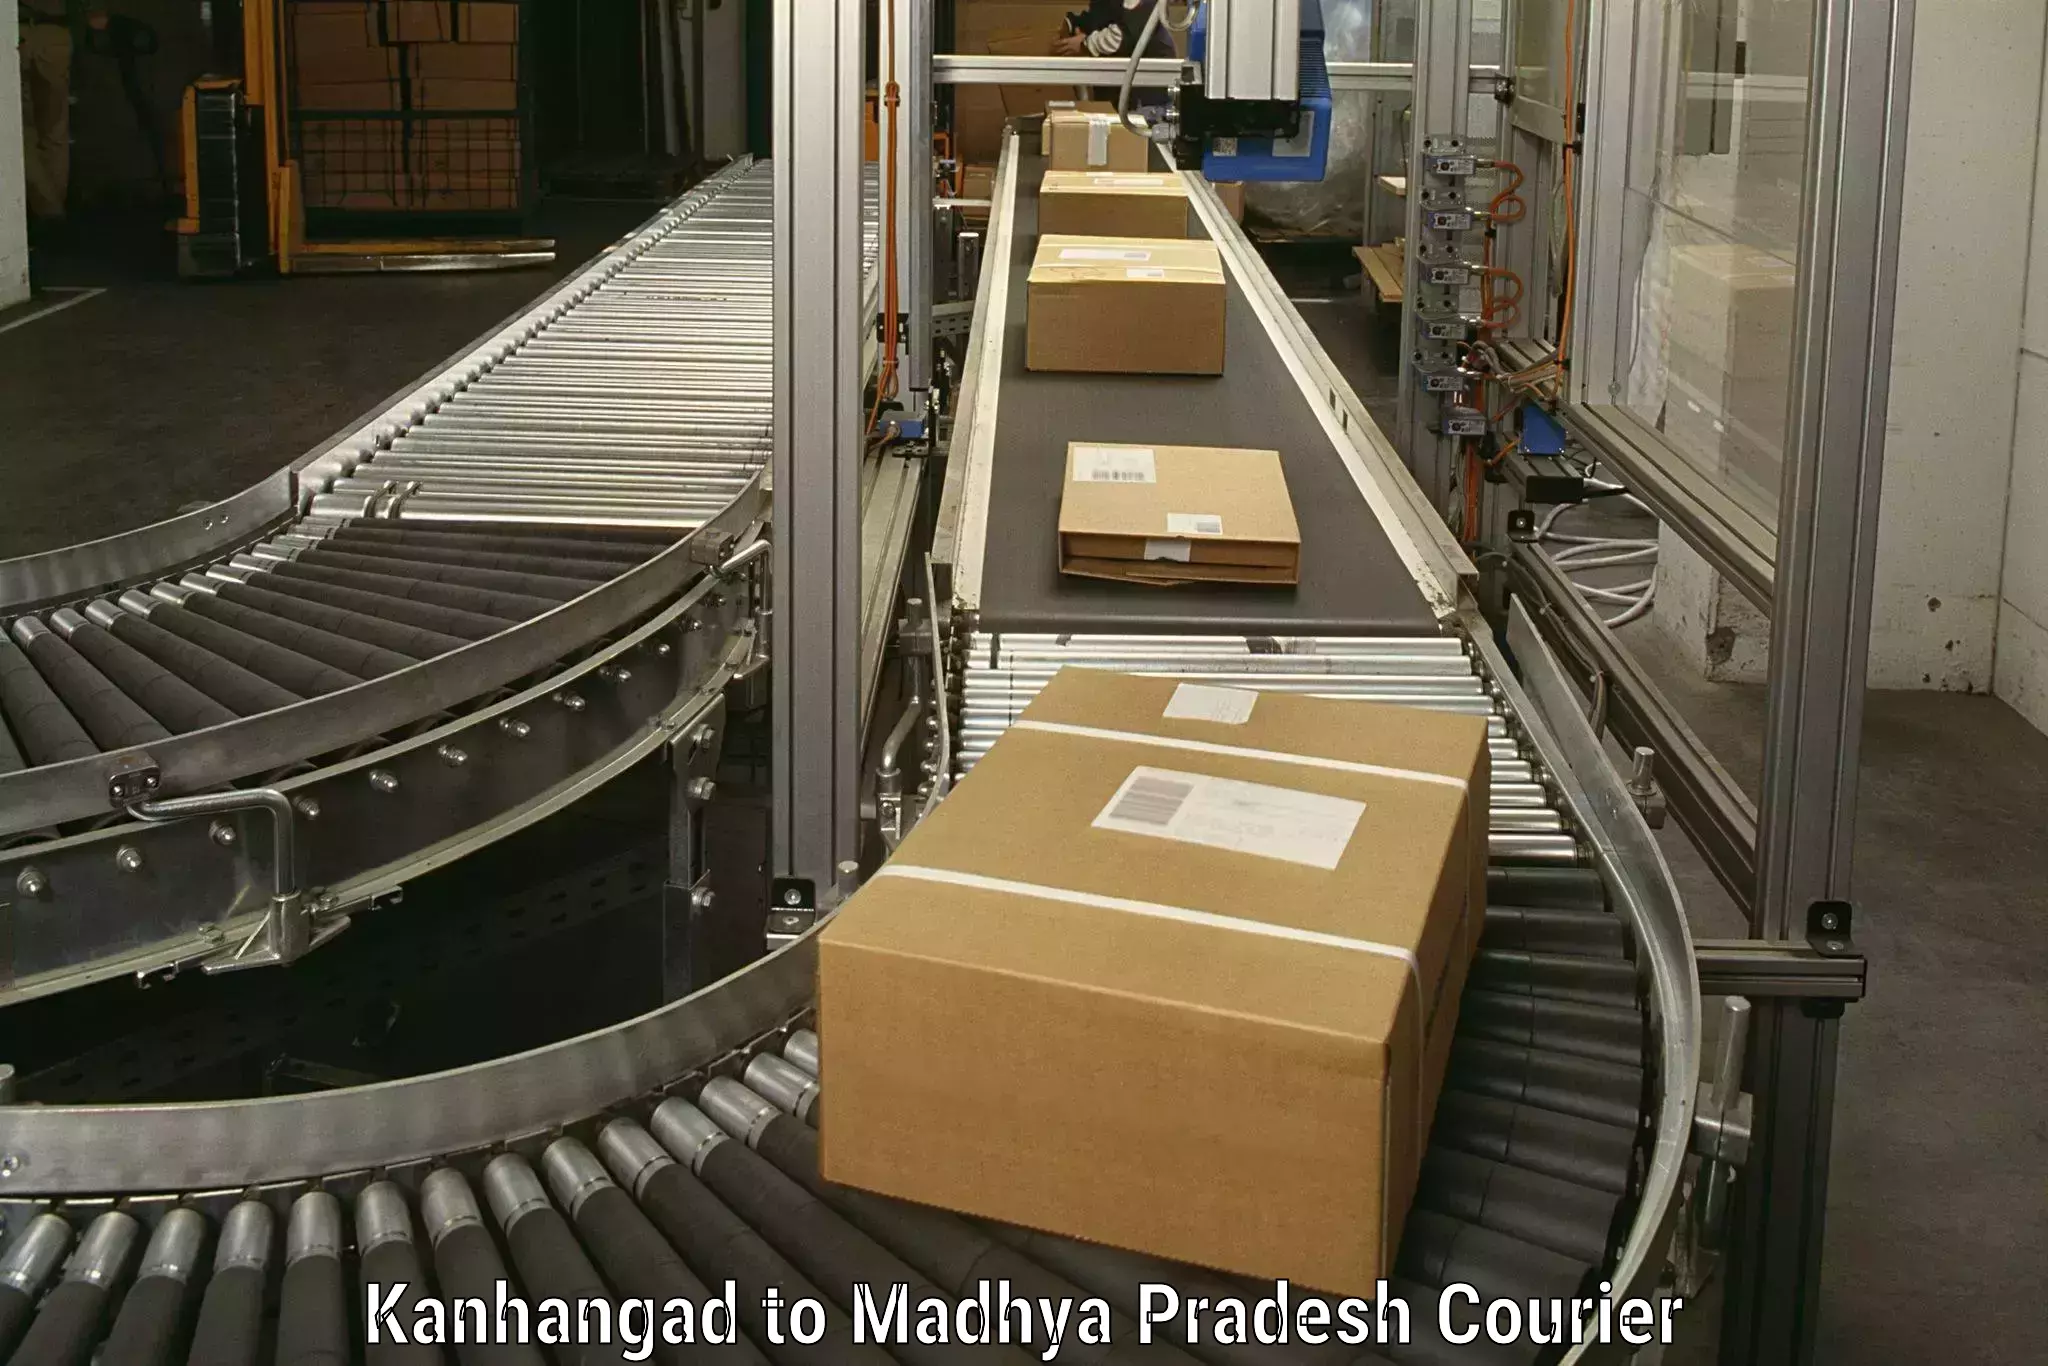 Furniture moving experts Kanhangad to Madhya Pradesh